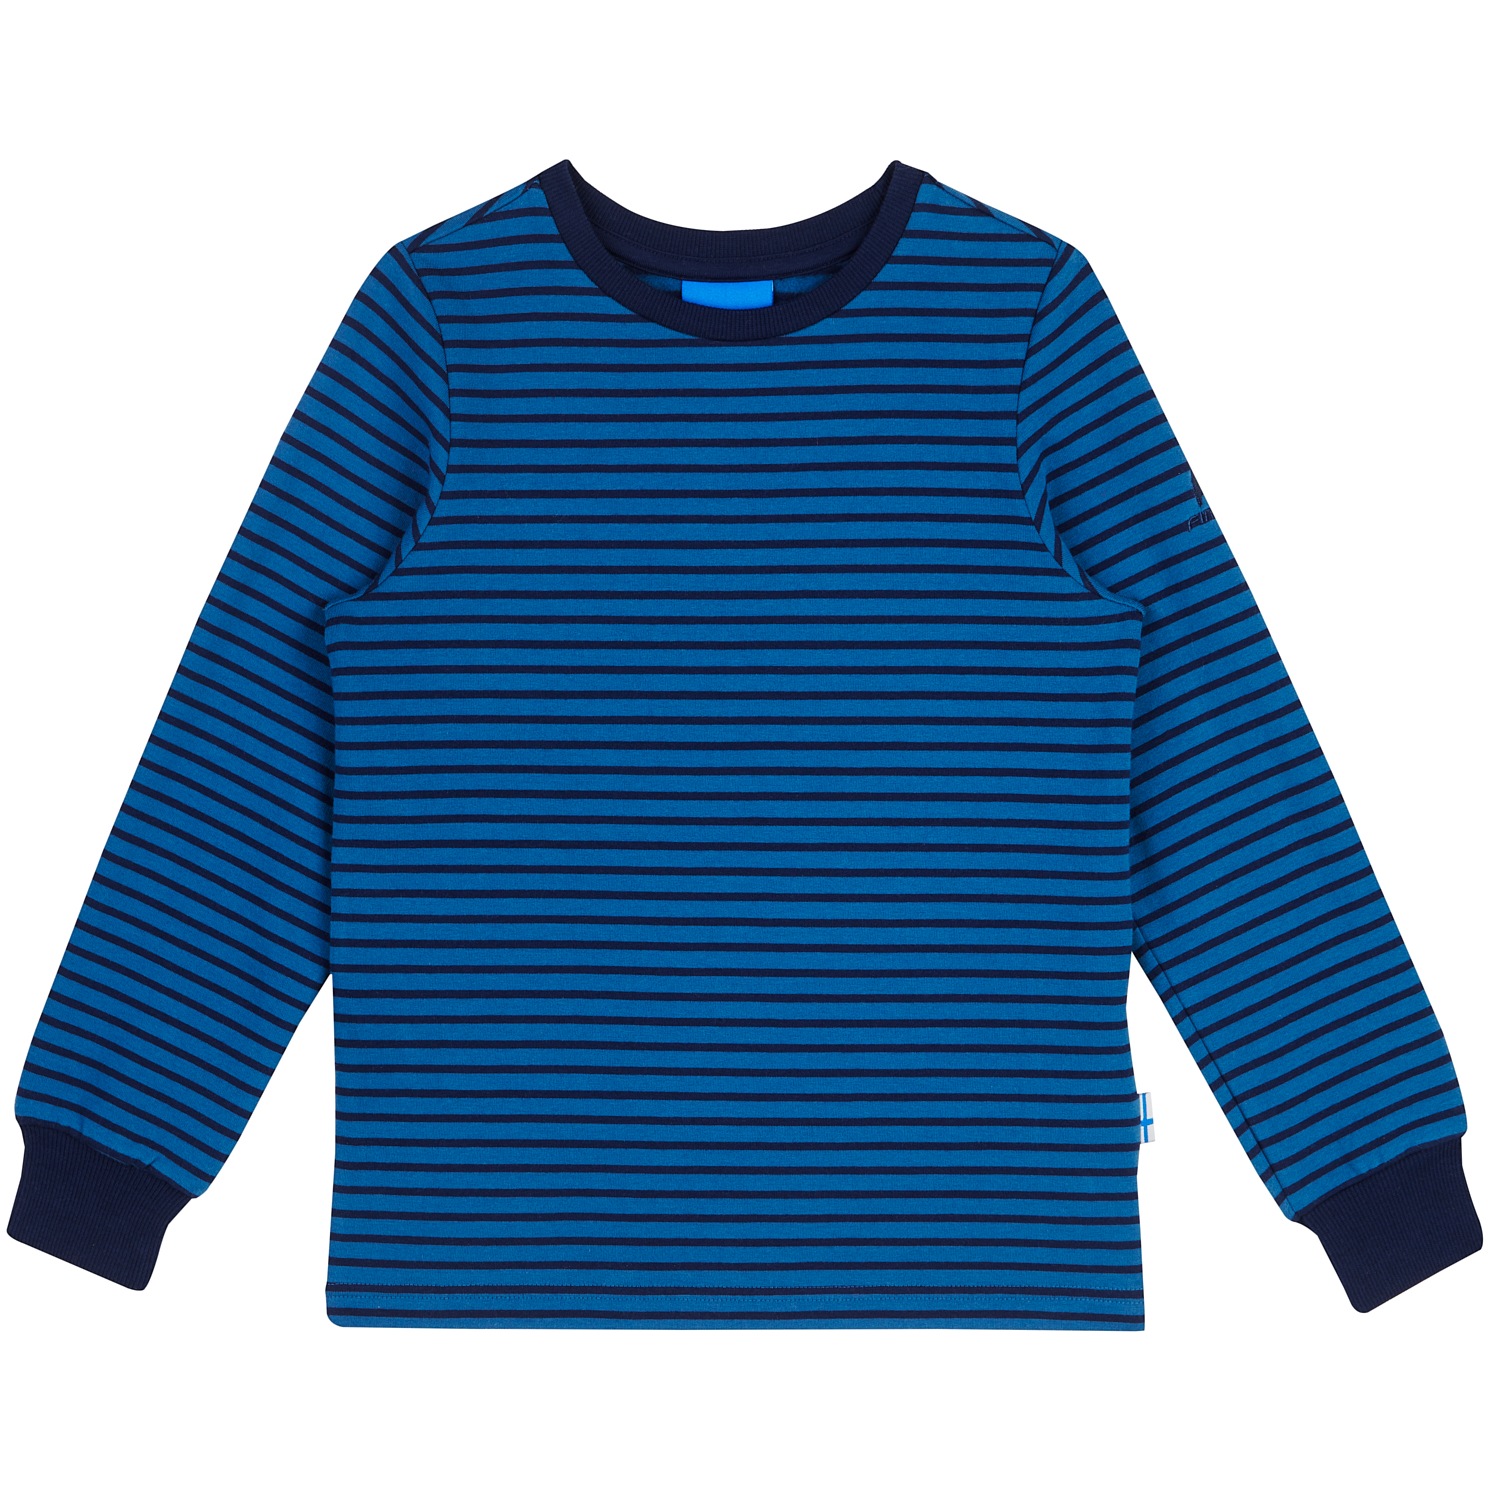 Produktbild von Finkid RIVI Langarm-Sweatshirt Kinder - real teal/navy